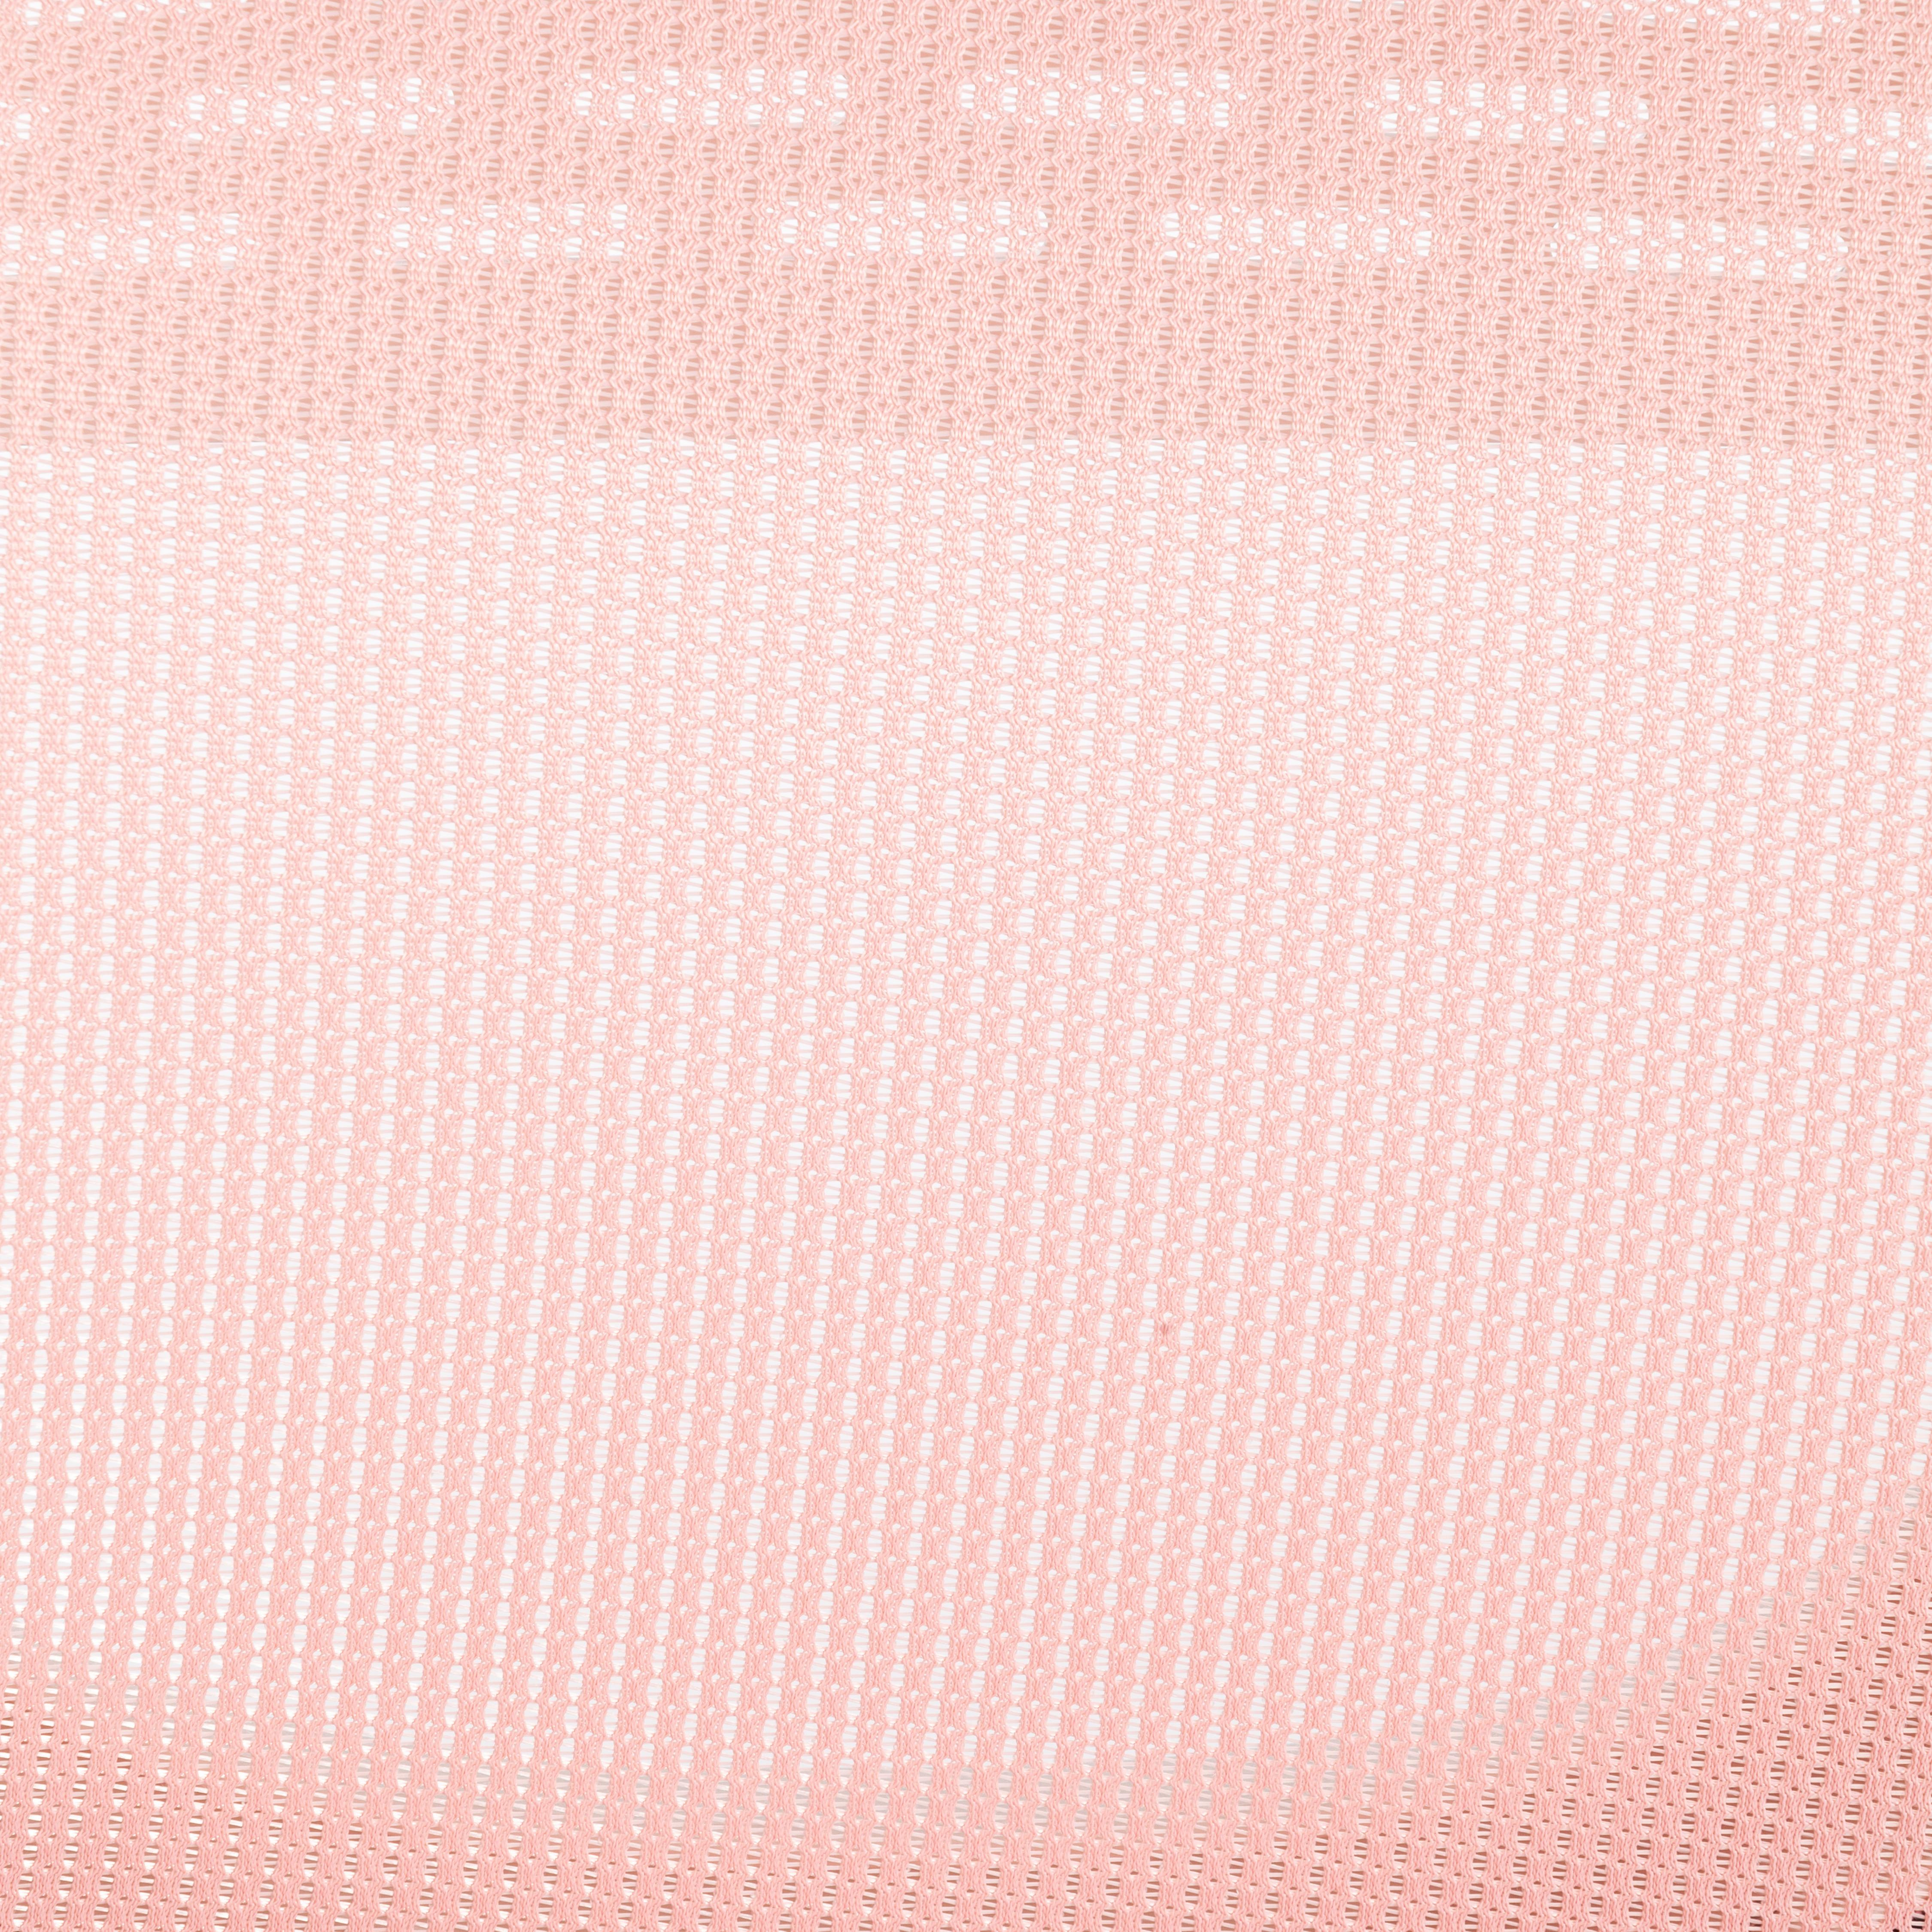 Кресло Junior M Pink (розовый)